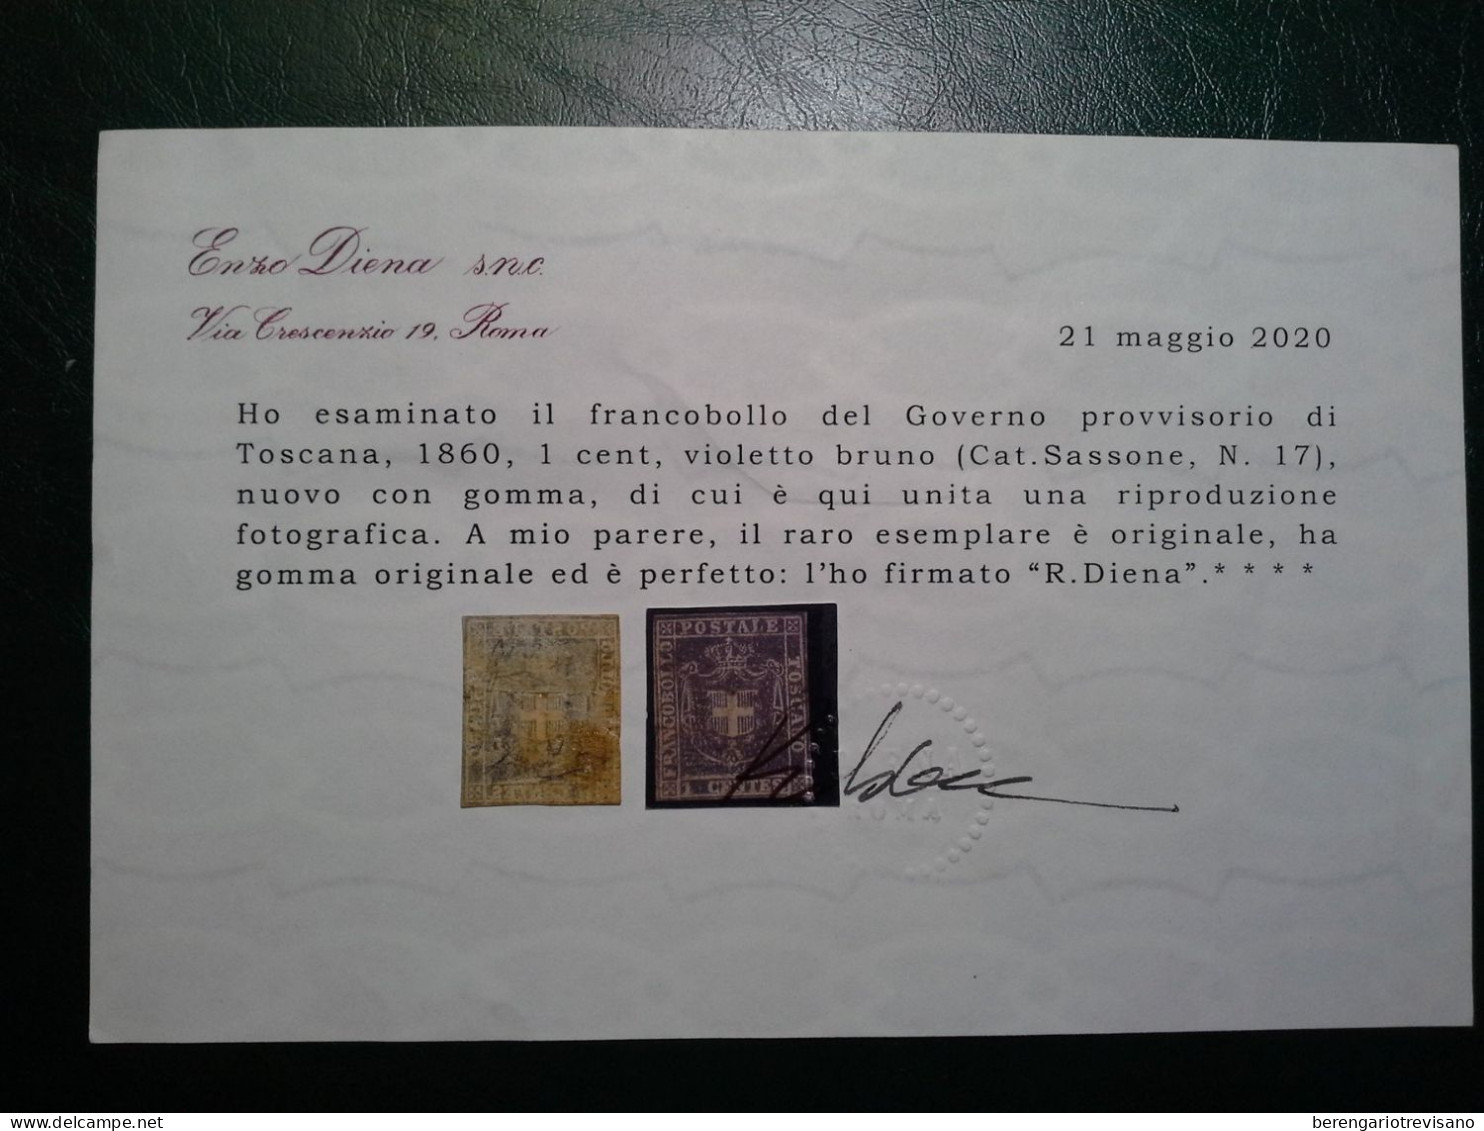 Regno d'Italia 1860 - Toscana 1 cent. marrone violaceo Raro - 2 certificati